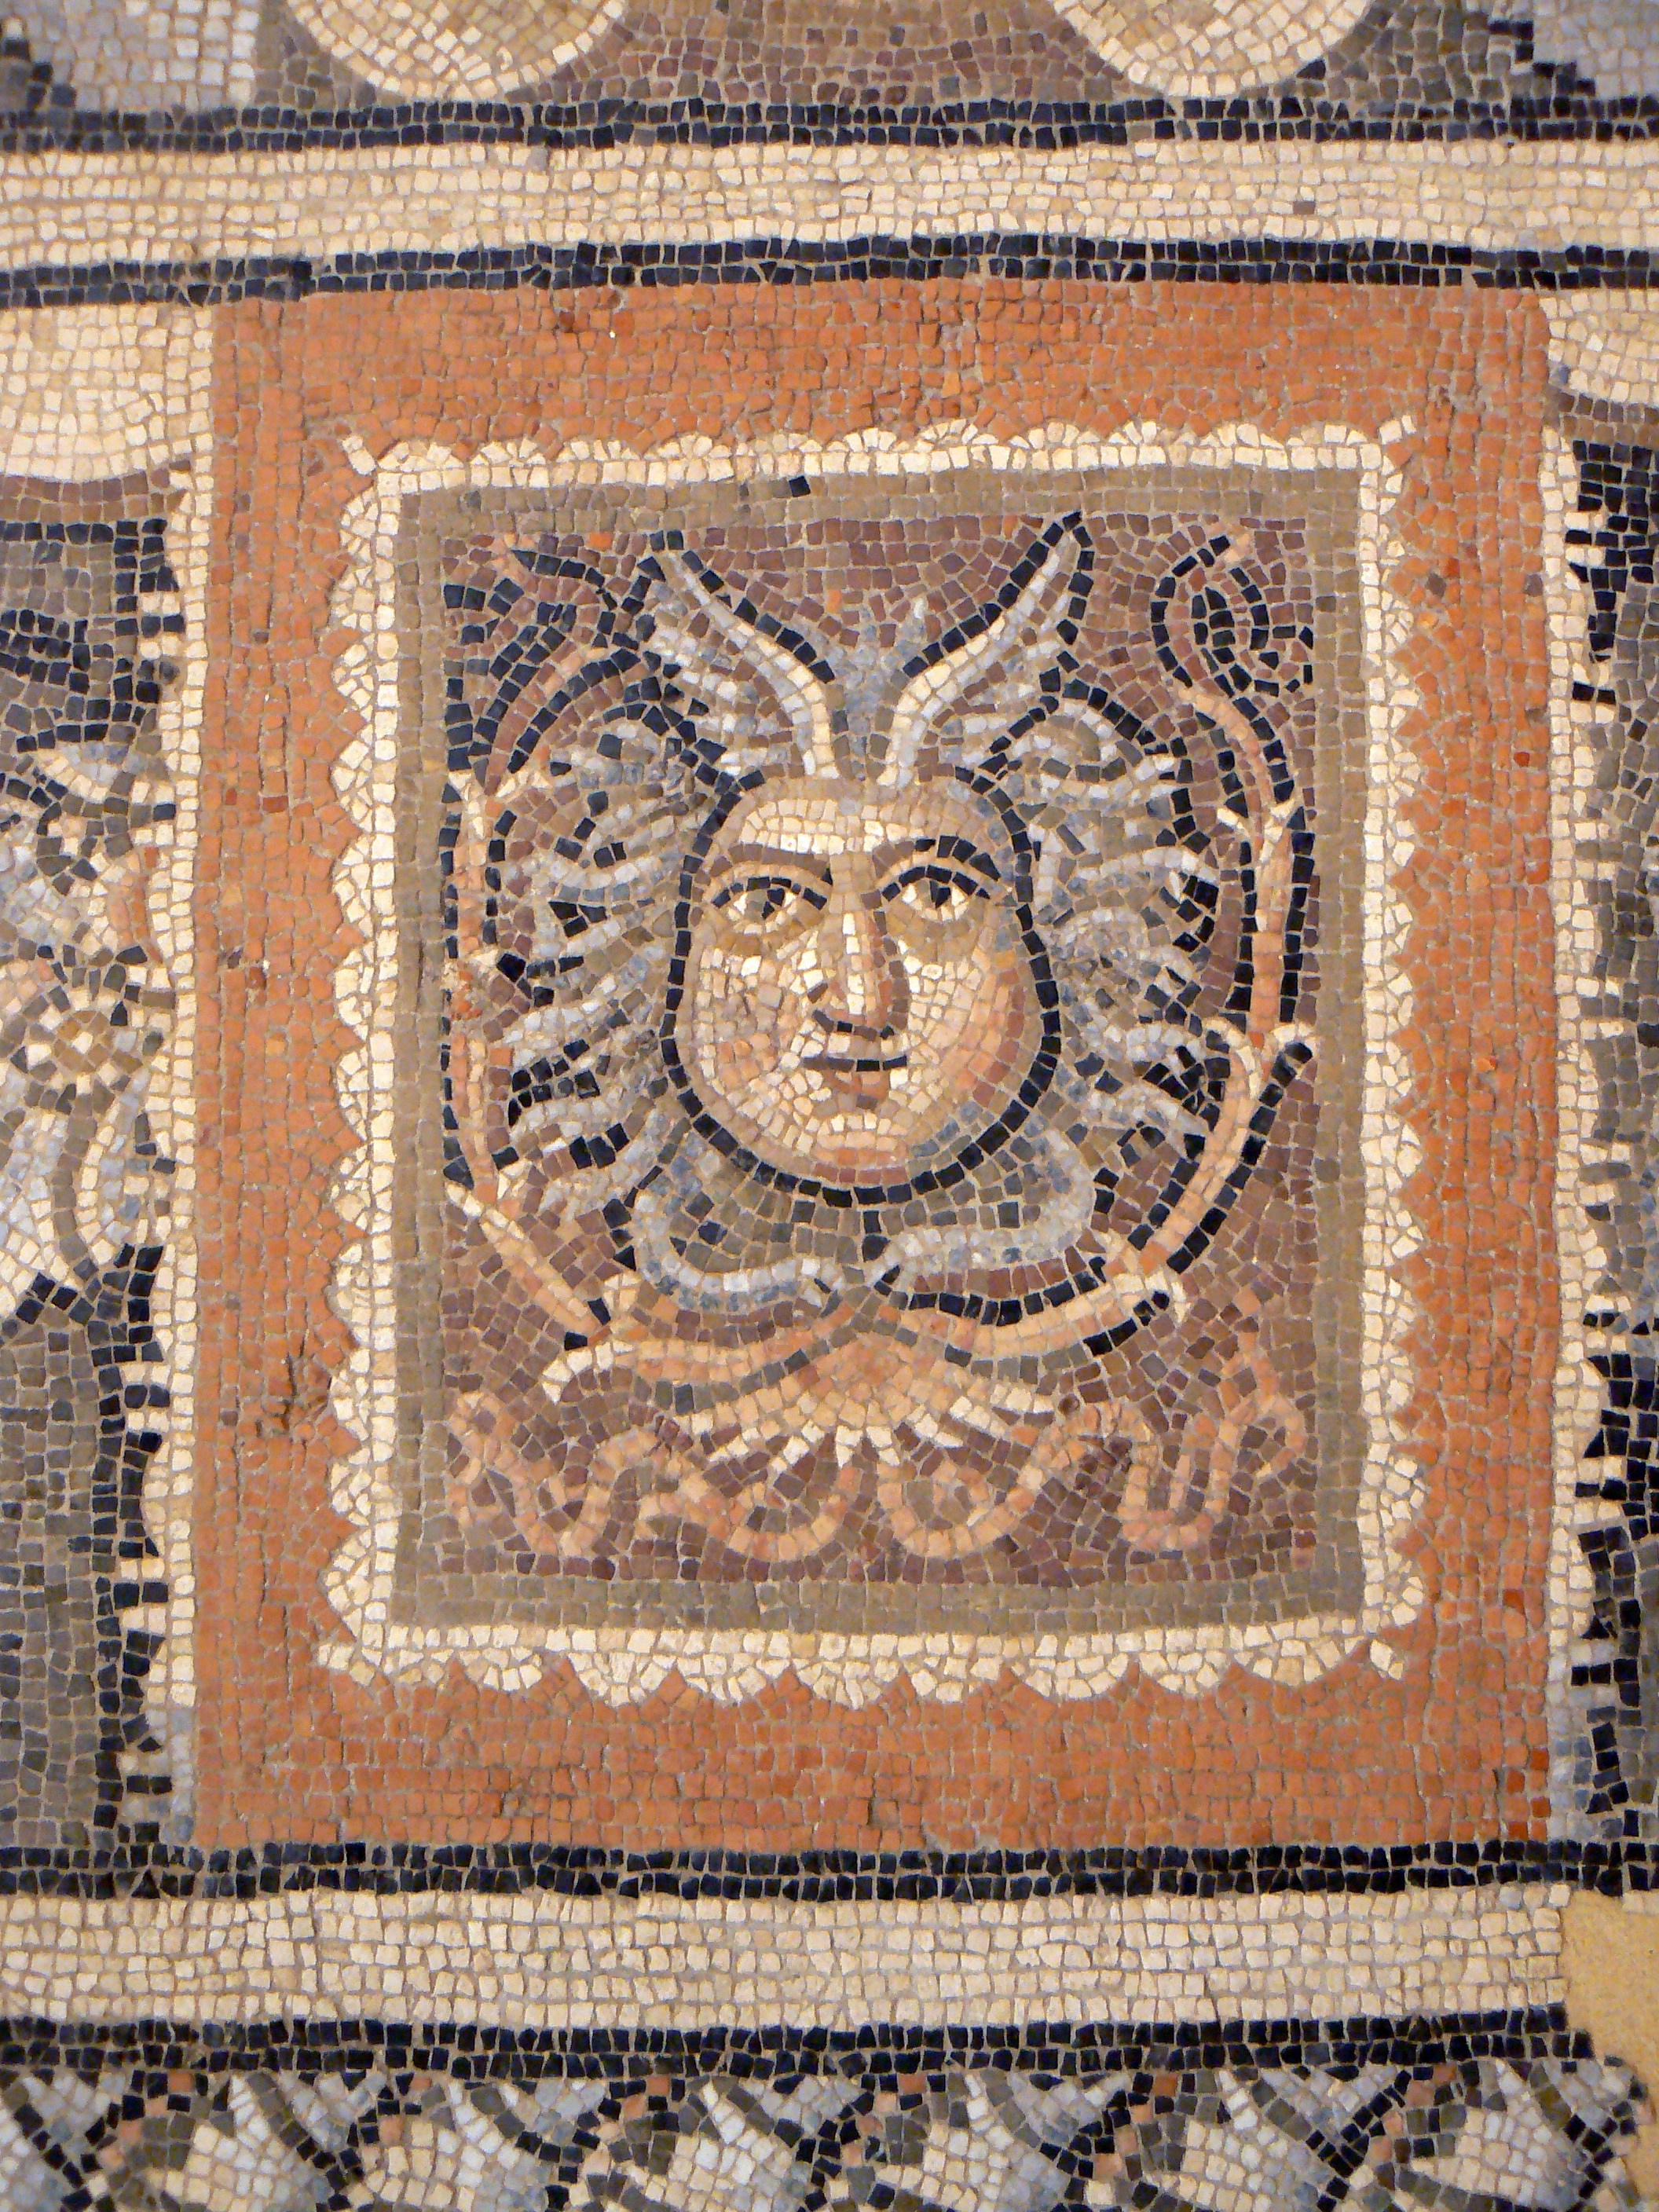 photo: https://upload.wikimedia.org/wikipedia/commons/9/93/Mosaico_domus_chirurgo_6.jpg